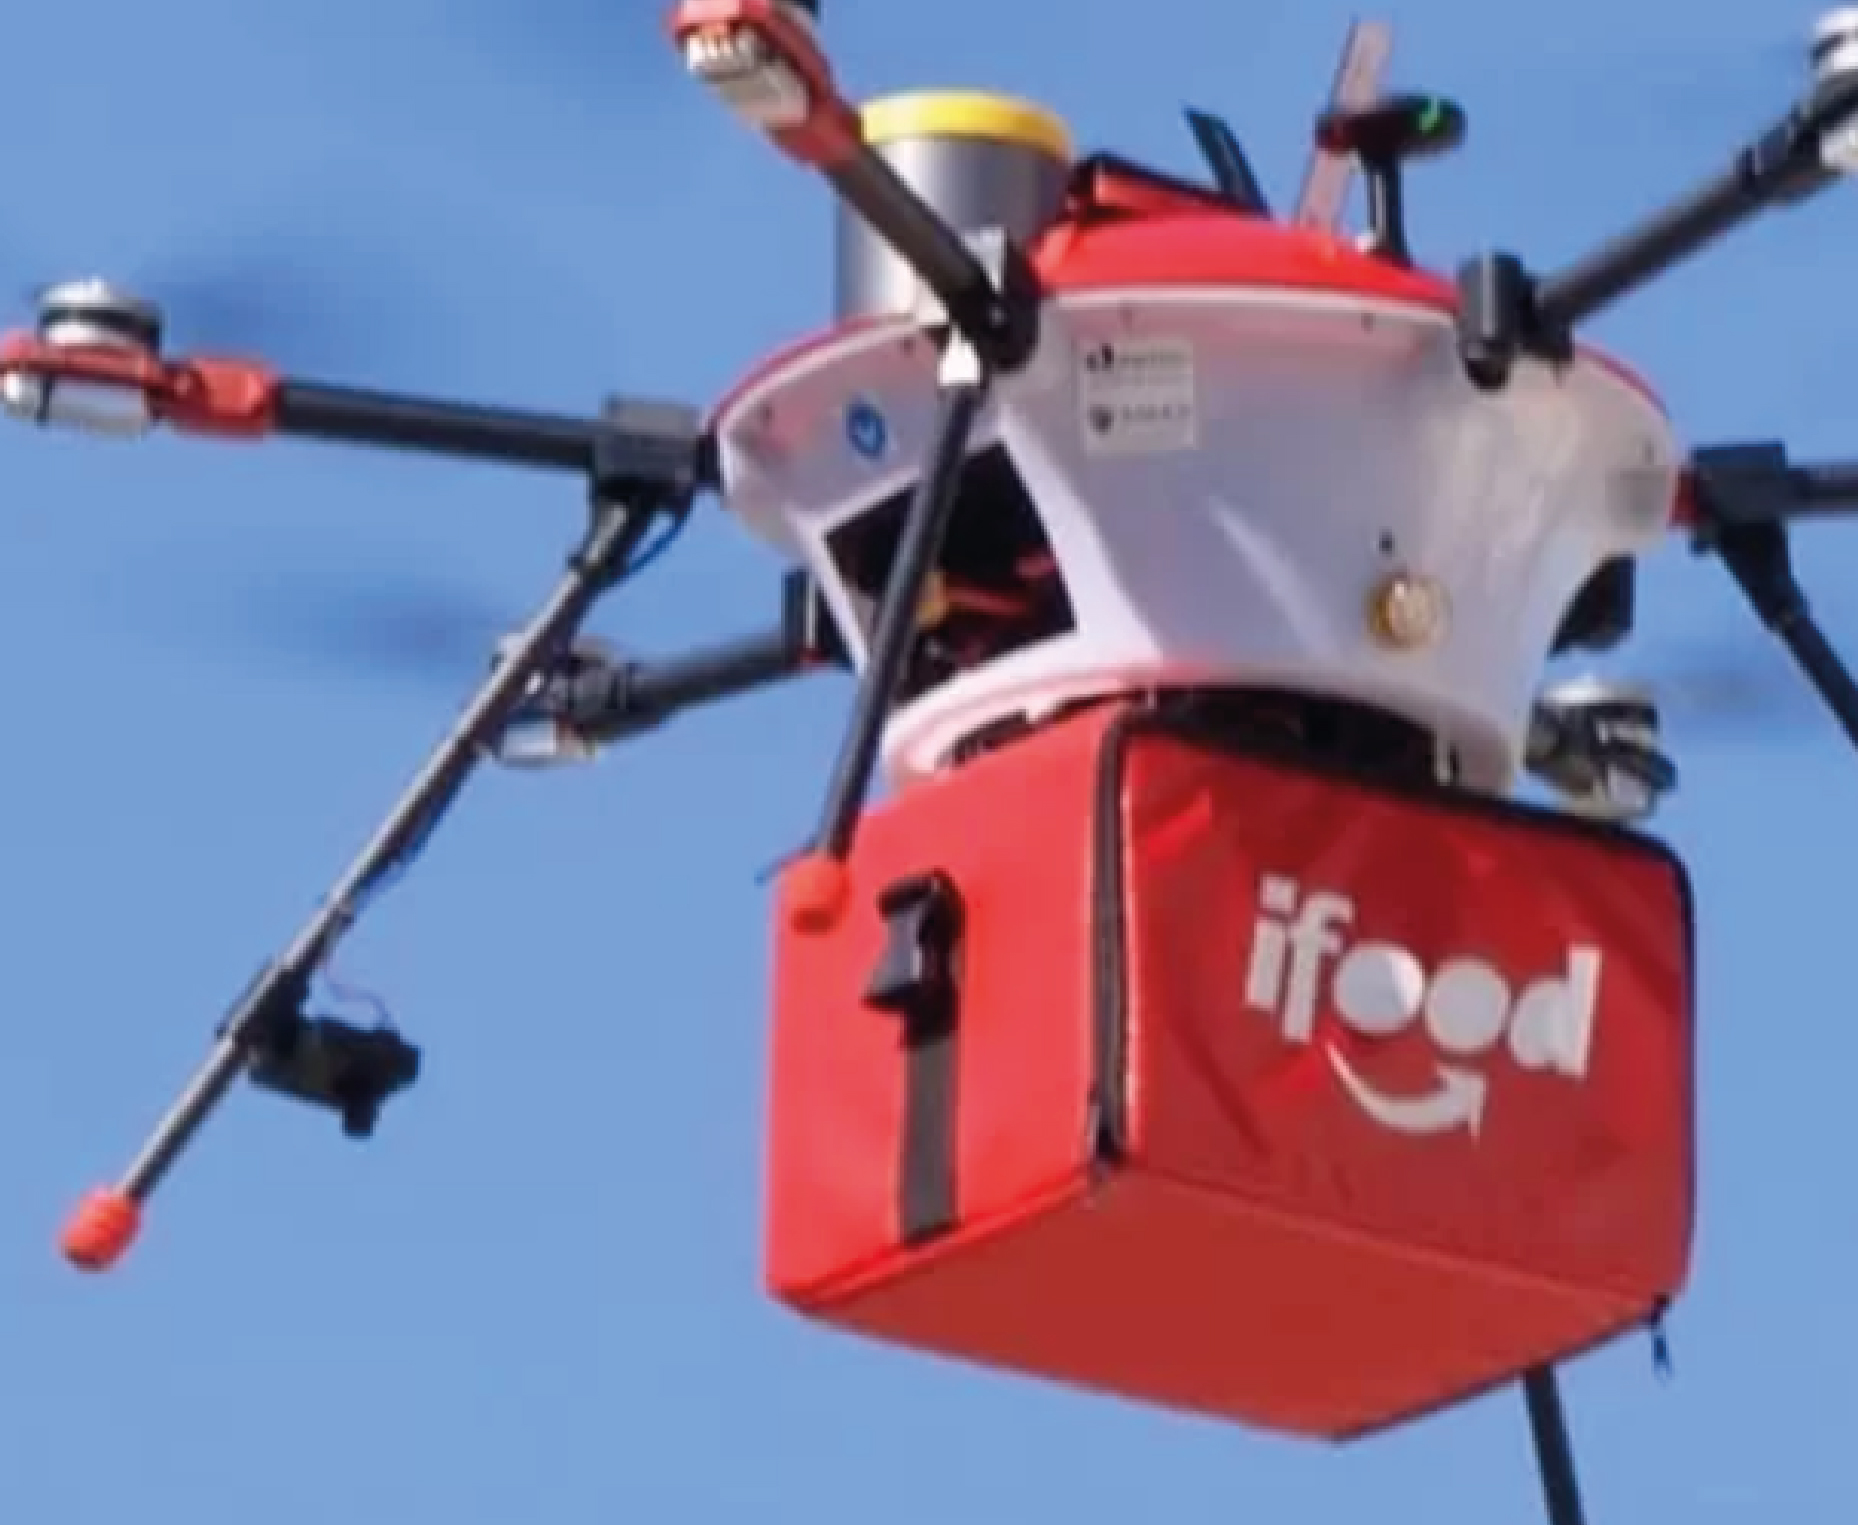 Imagina receber seu pedido do iFood por um drone?